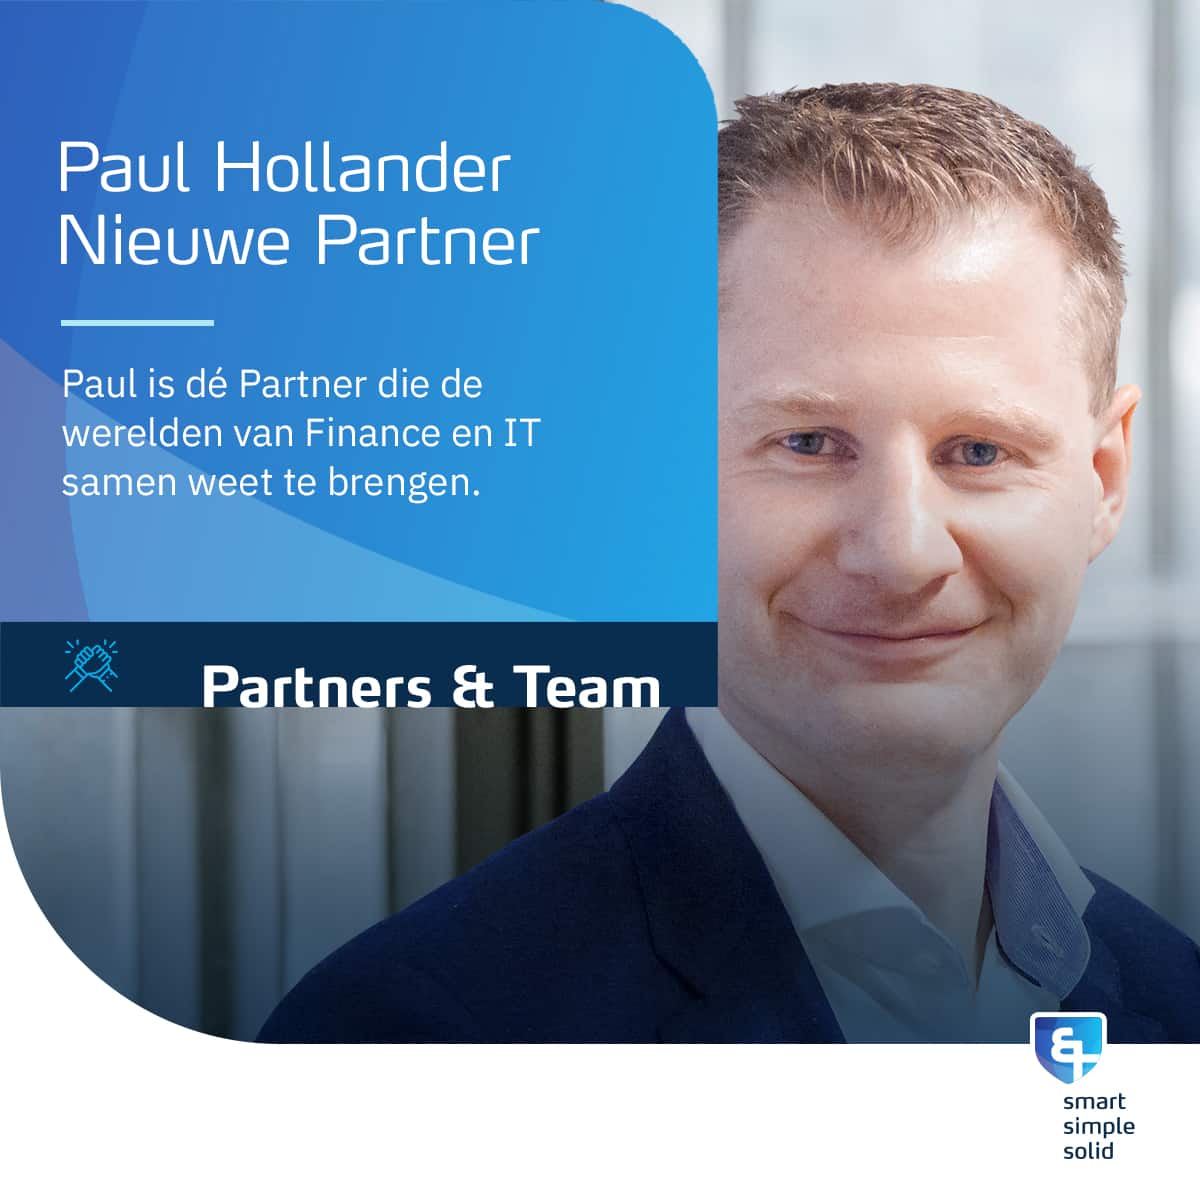 Paul Hollander Nieuwe Partner